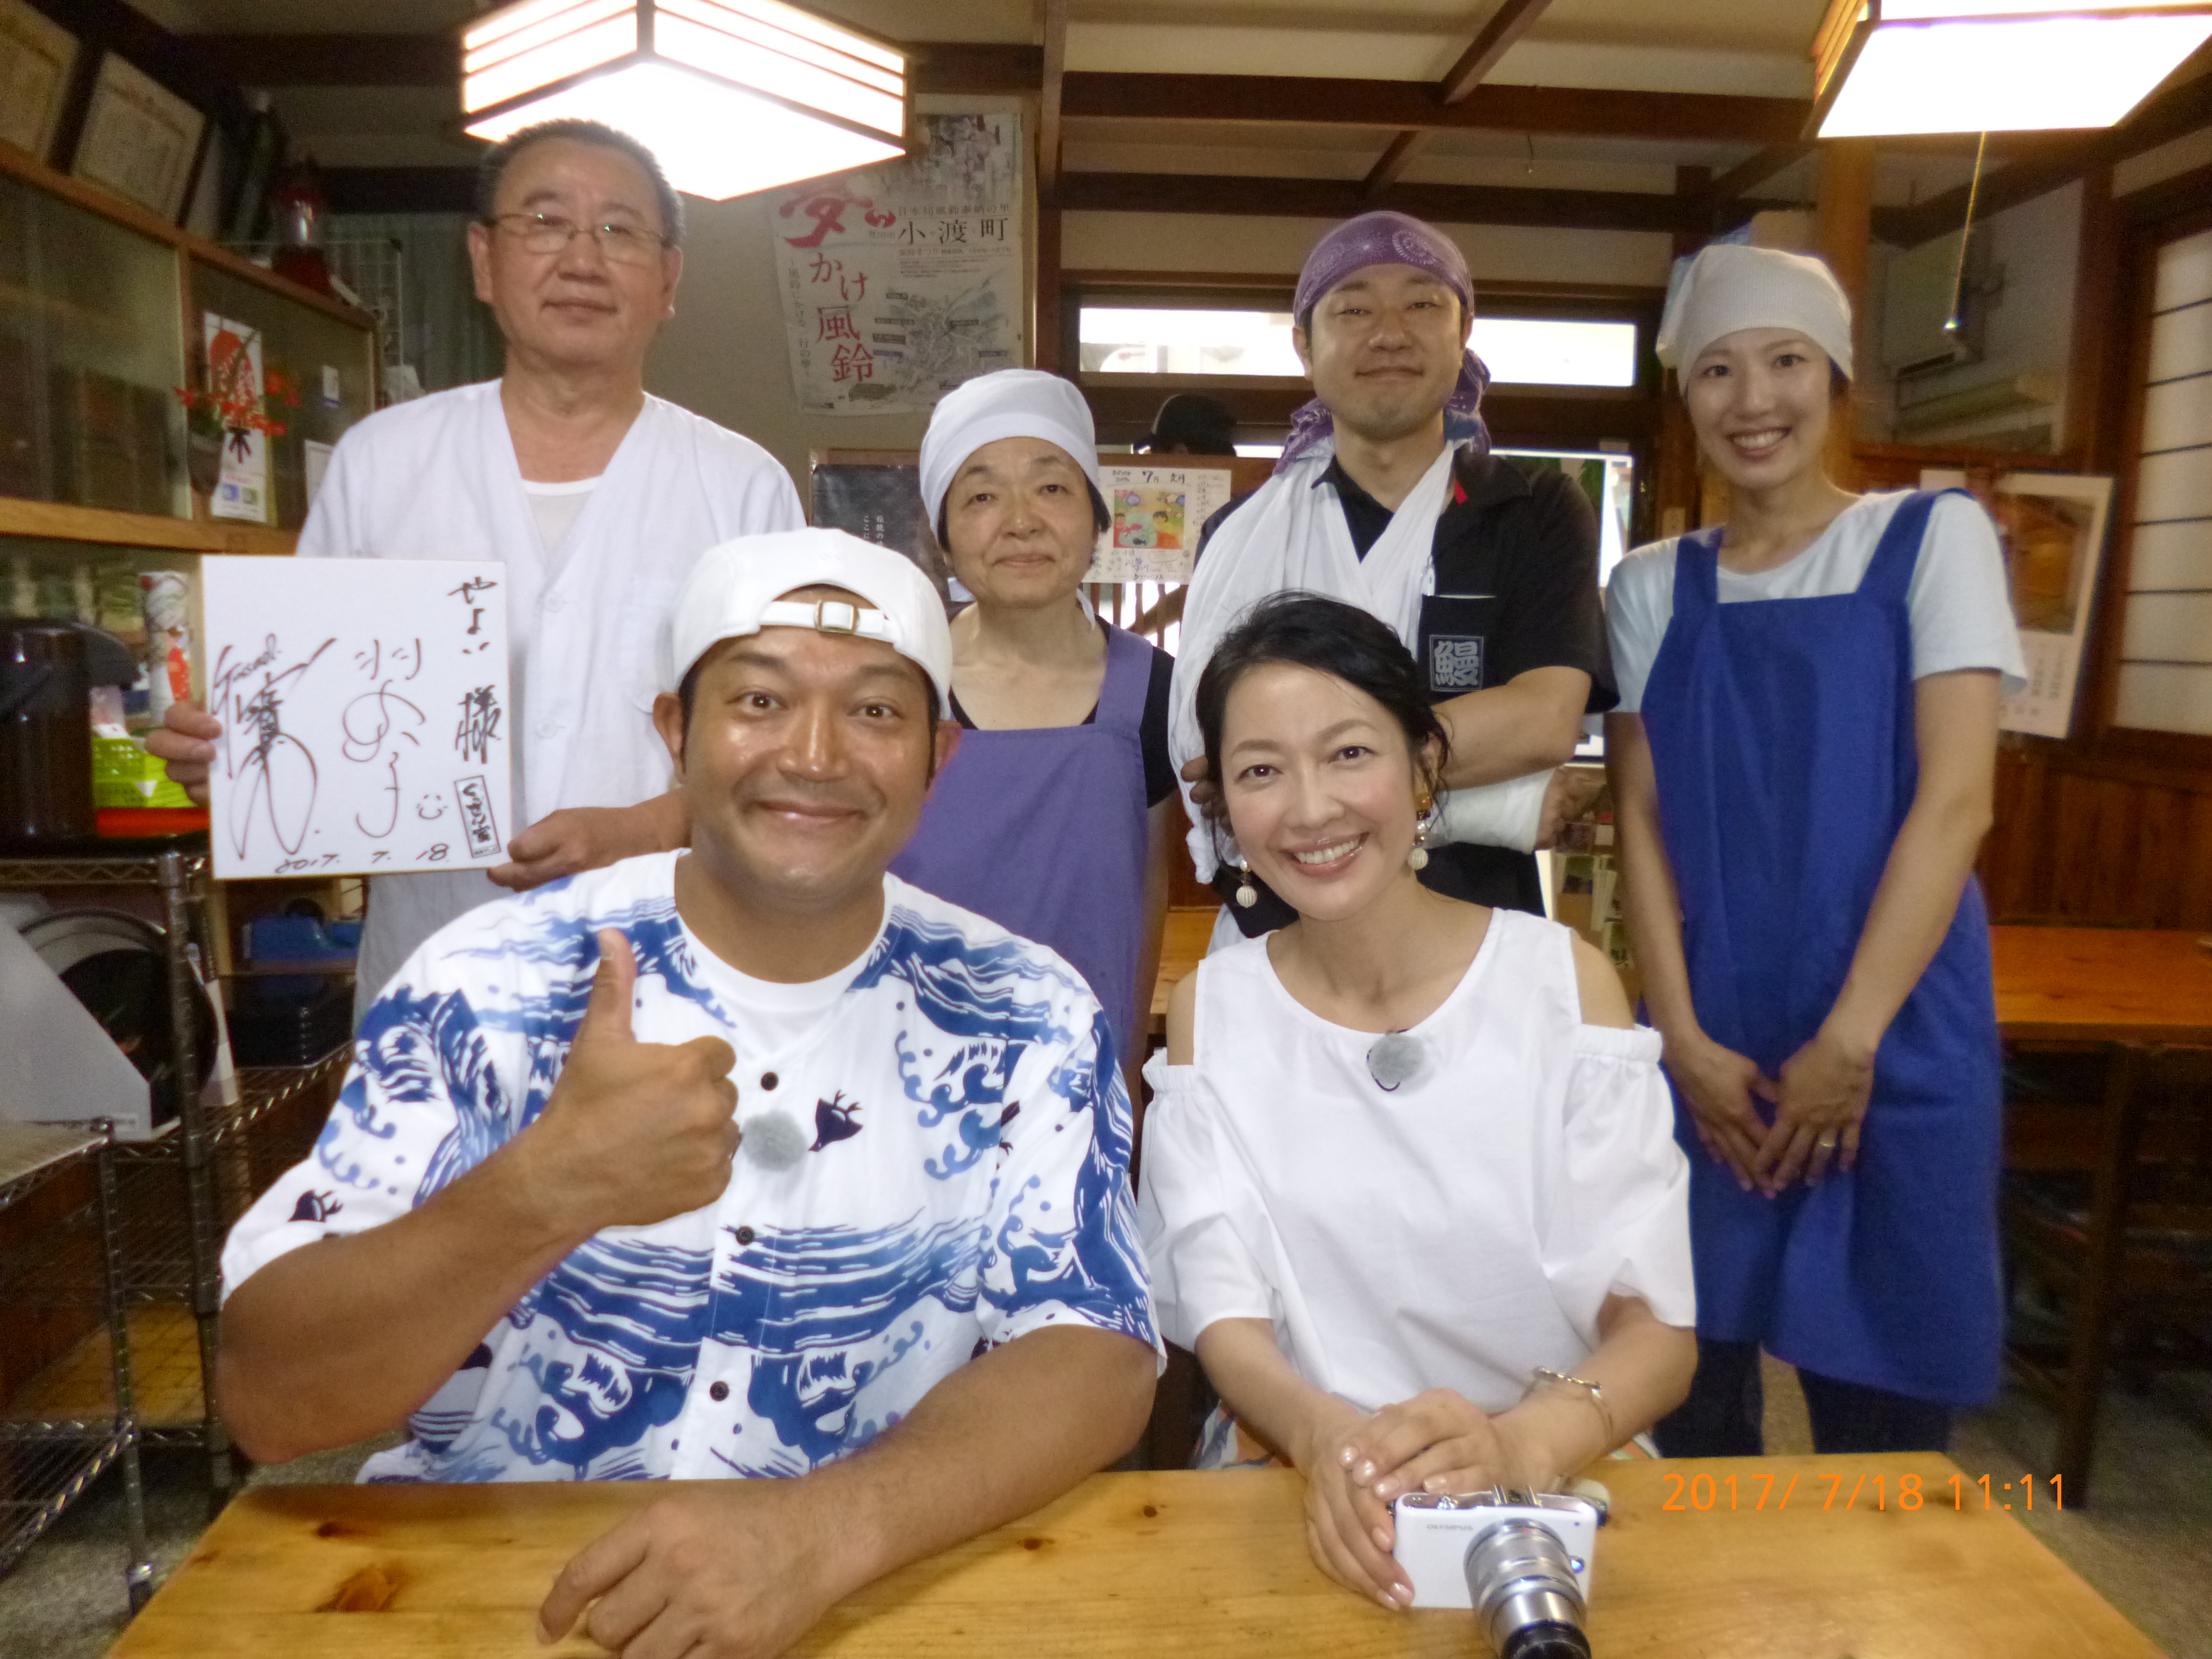 8/23更新 ぐっさん家で放送されました。 豊田市旭地区のうなぎ料理店「やよい」の公式ホームページ